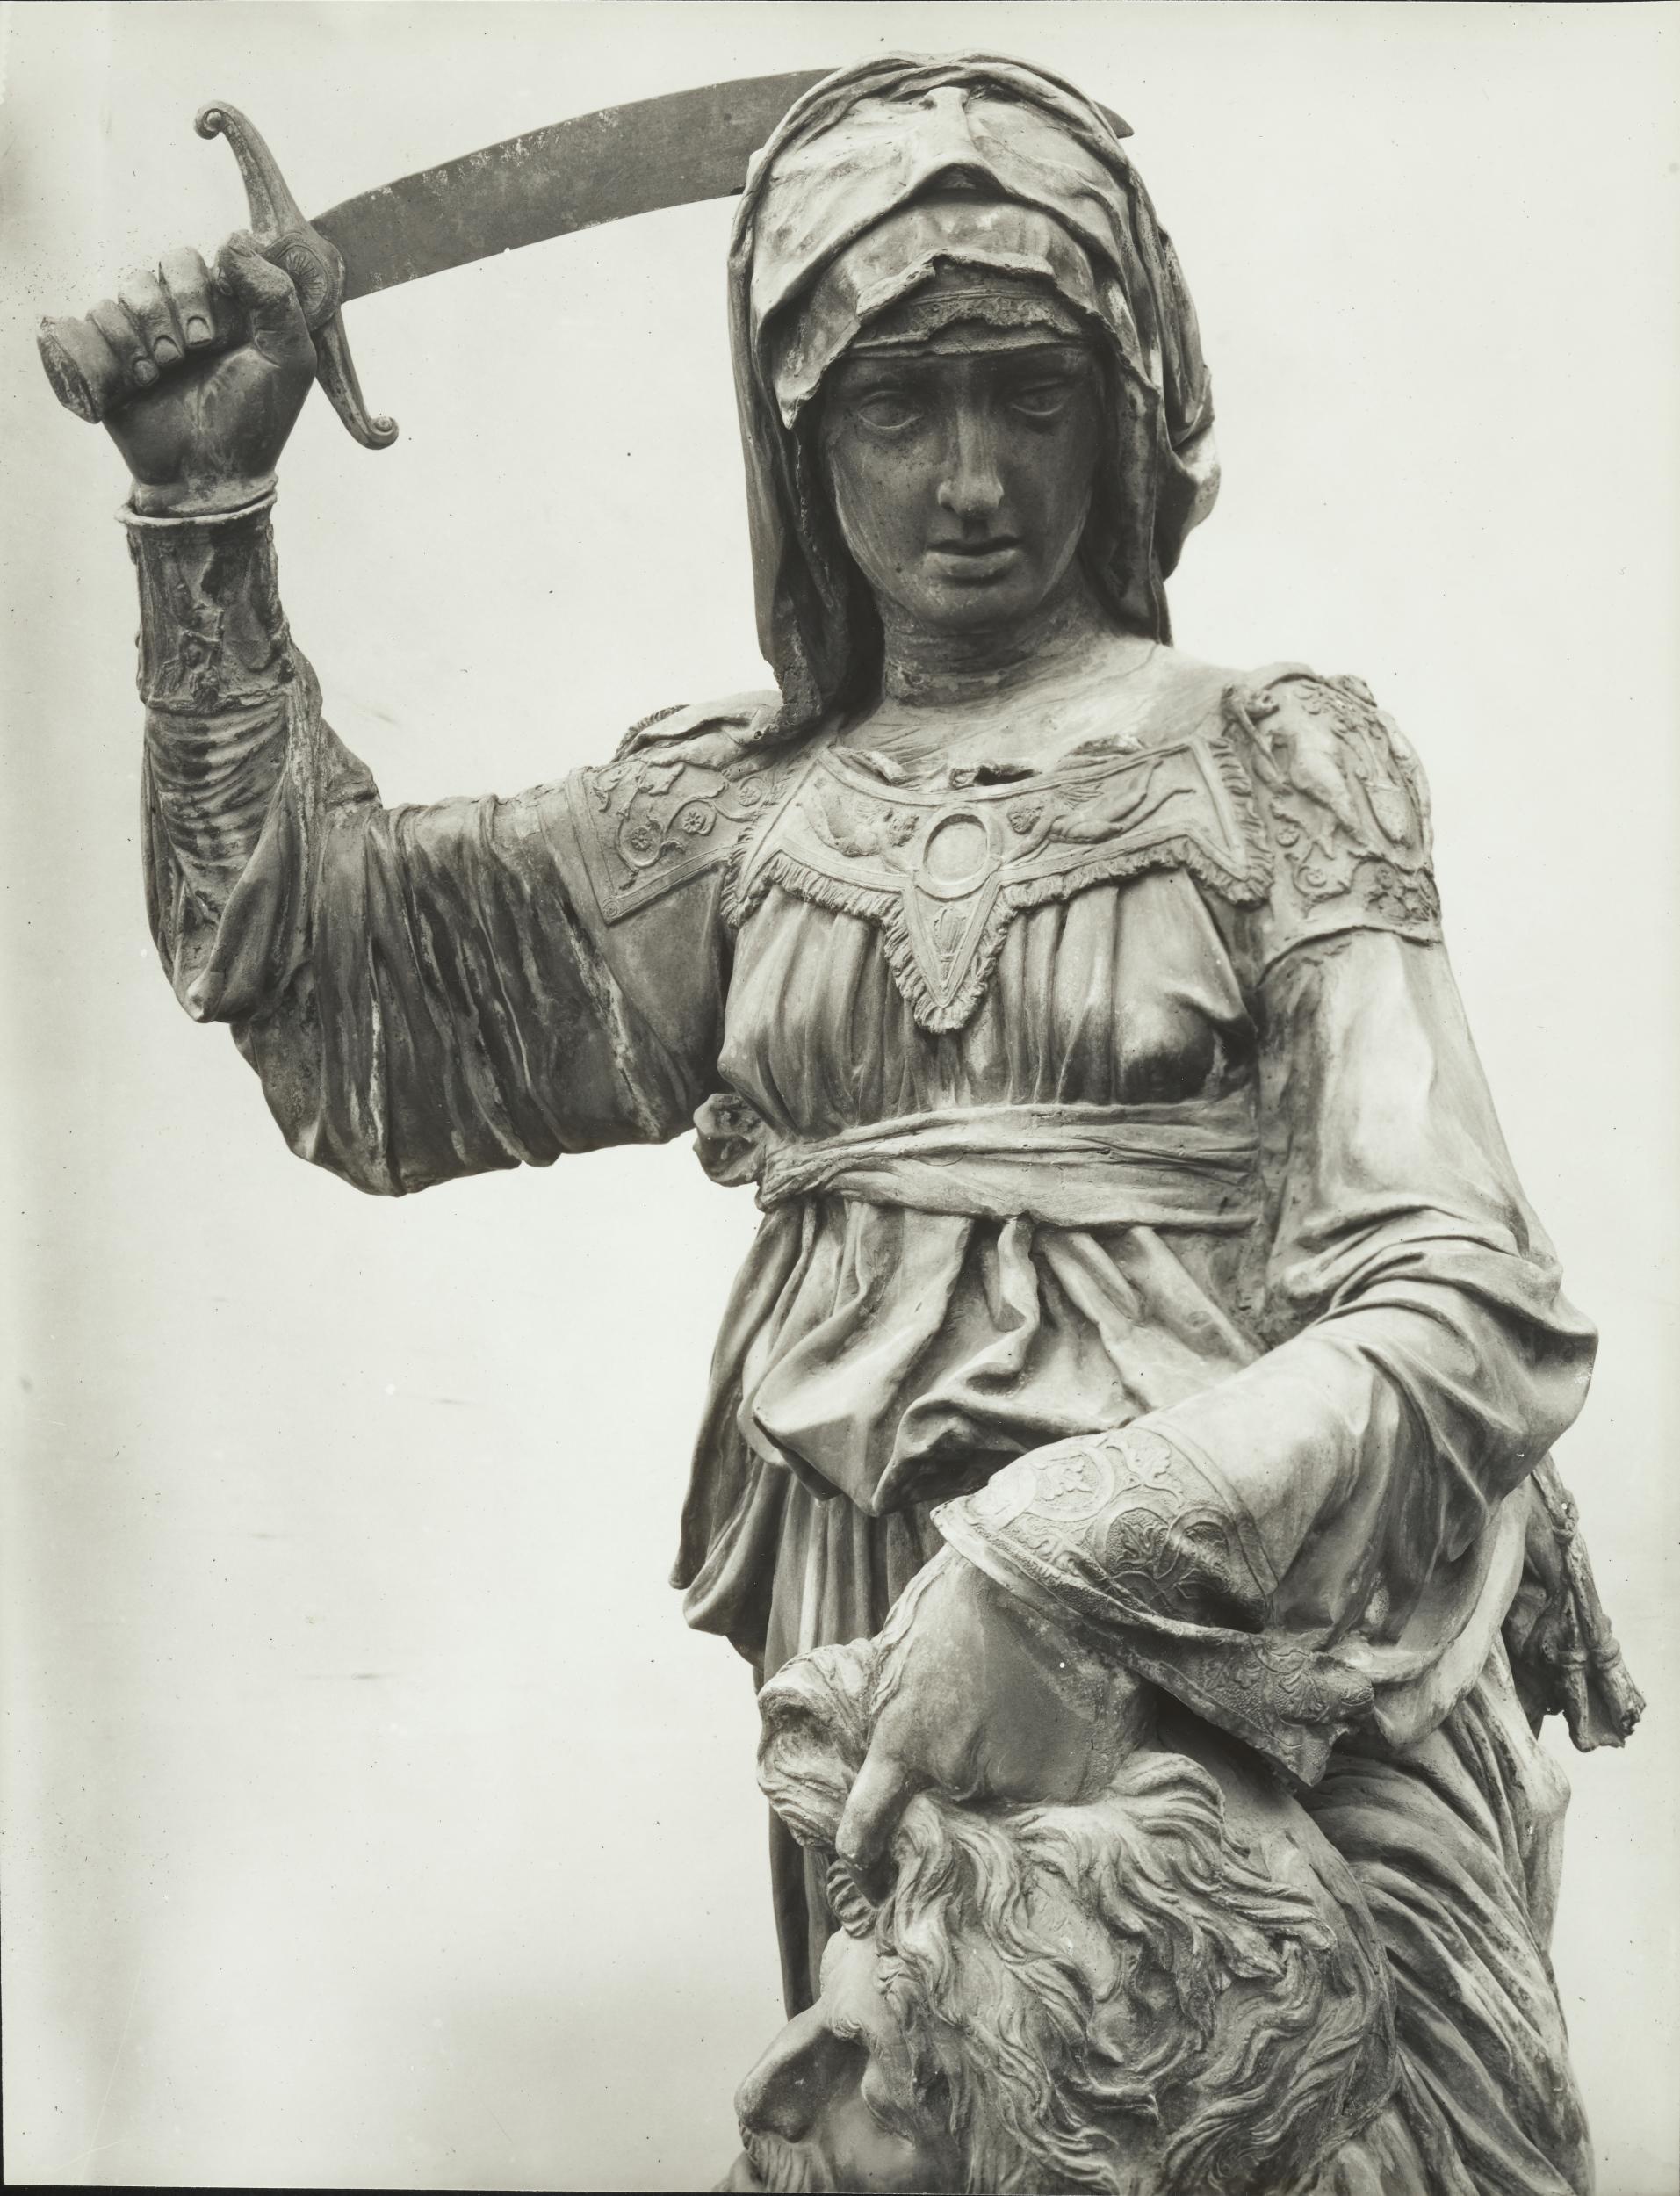 Gino Malenotti, Firenze - Piazza della Signoria, oggi a Palazzo Vecchio, La Giuditta, mezzo busto, 1931- 1938, gelatina ai sali d'argento, MPI6022130